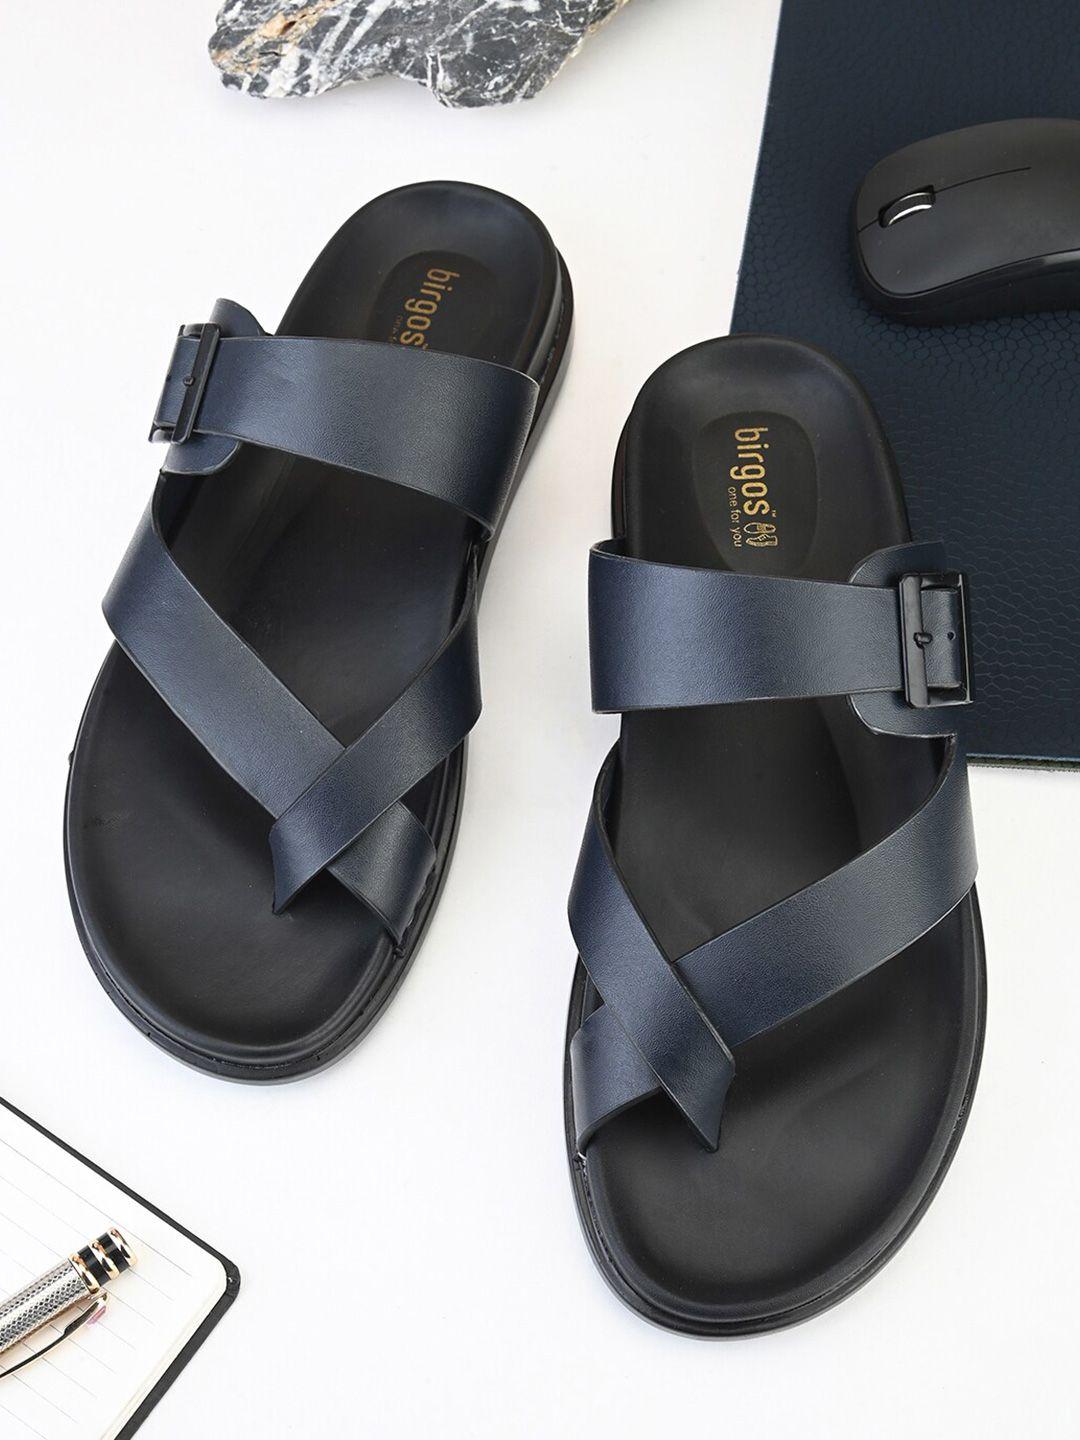 birgos-men-one-toe-comfort-sandals-with-buckle-detail